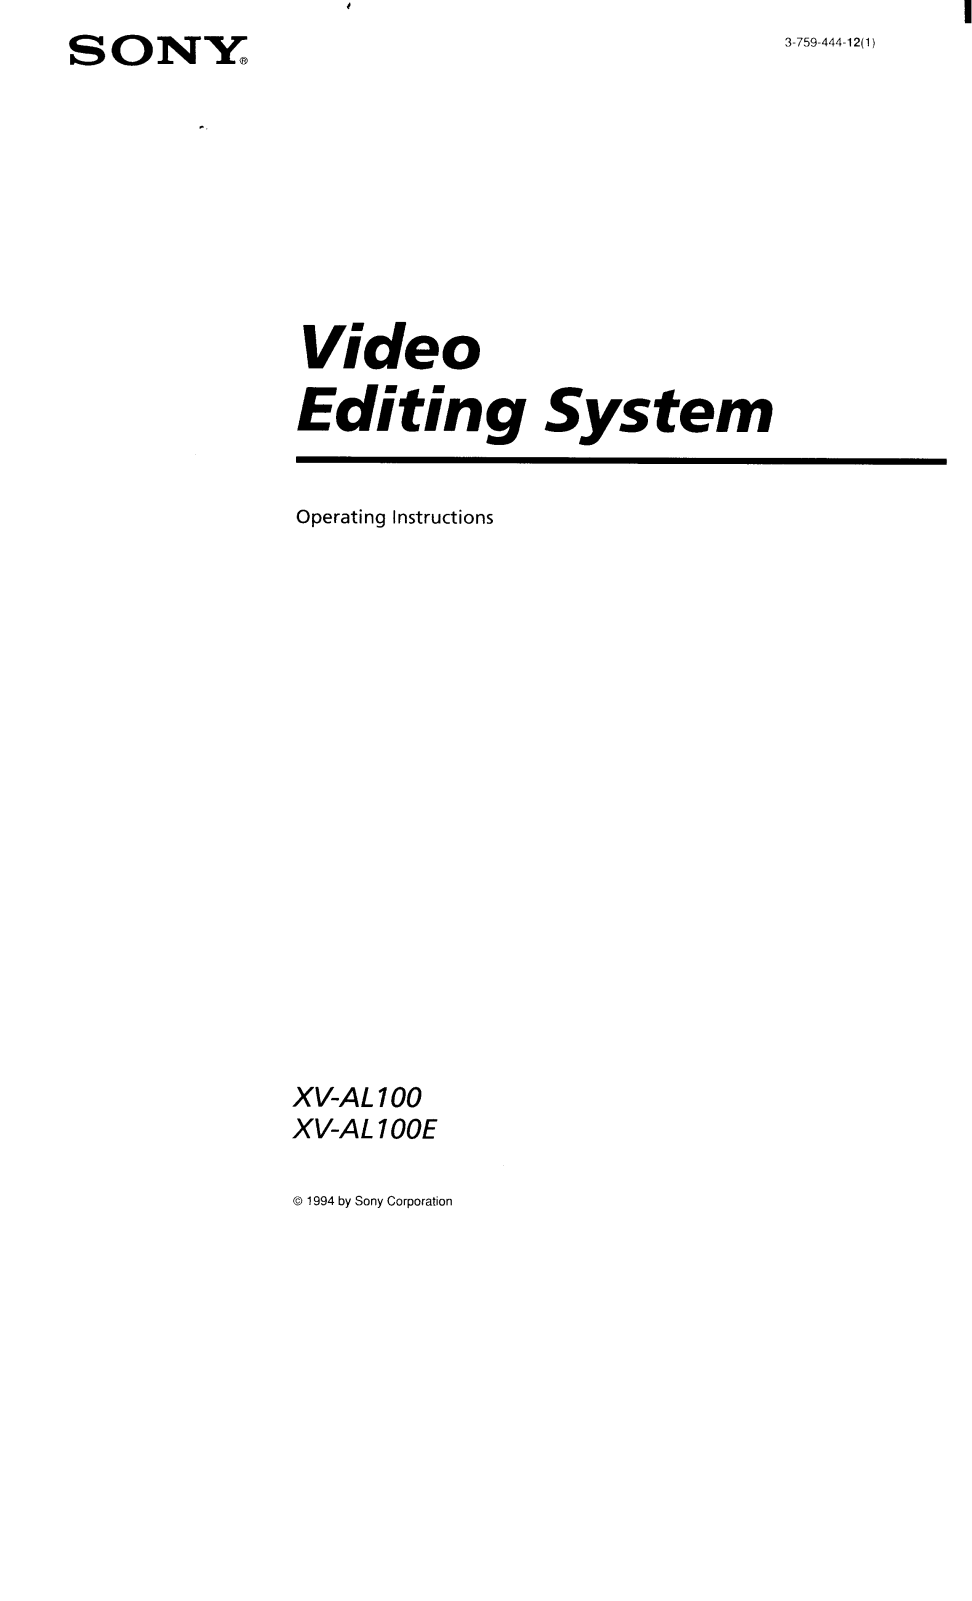 Sony XVAL100, XVAL100E Operating Manual